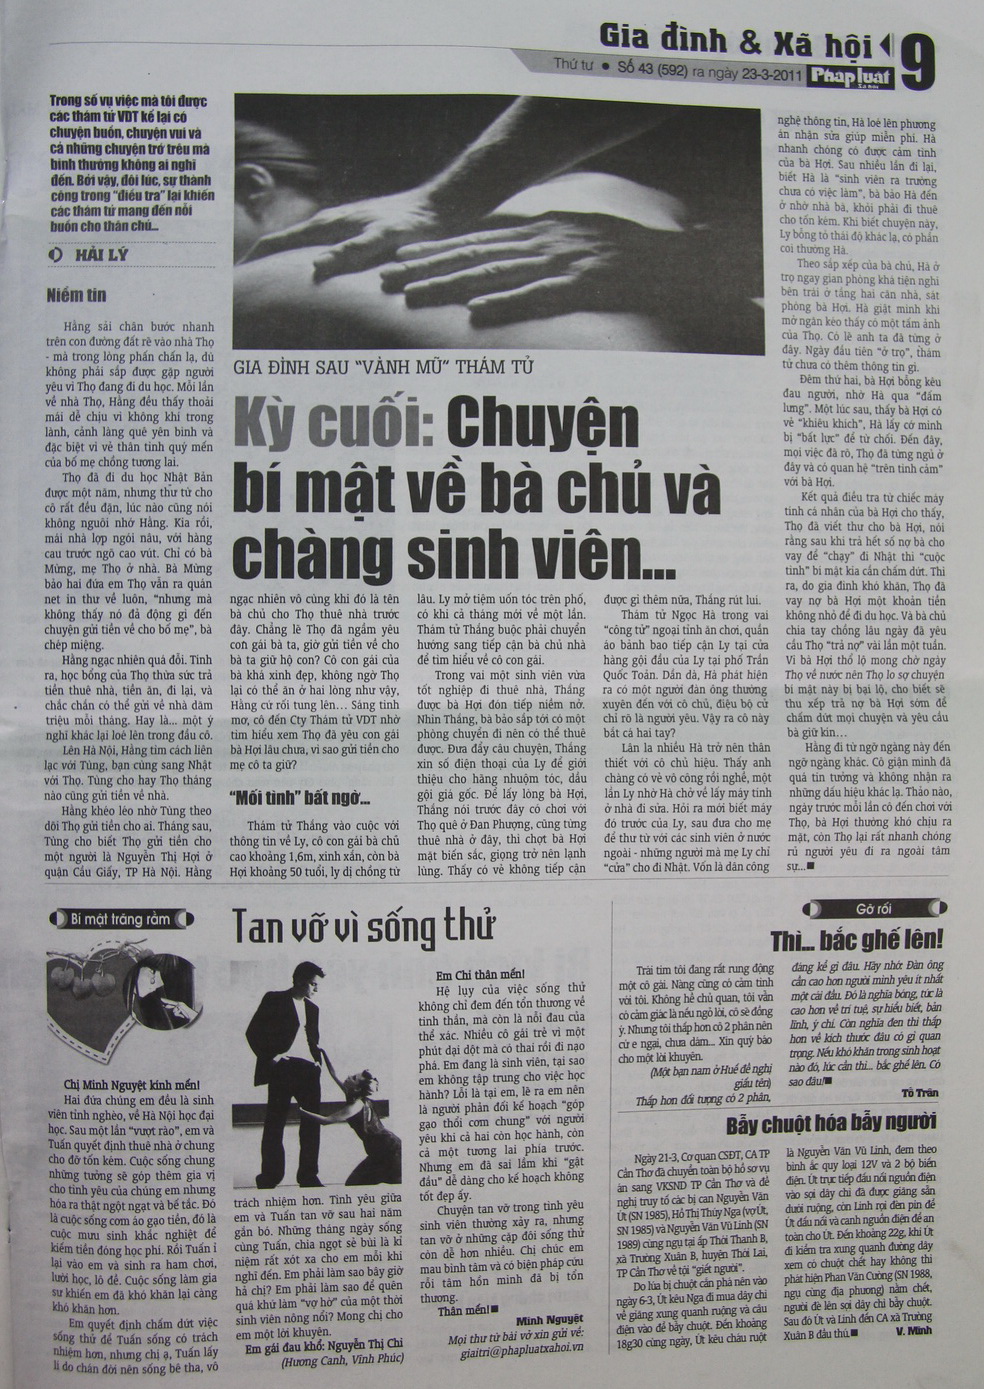 thamtu.com .vn bao dien tu56 - Chuyện bí mật về bà chú và chàng sinh viên